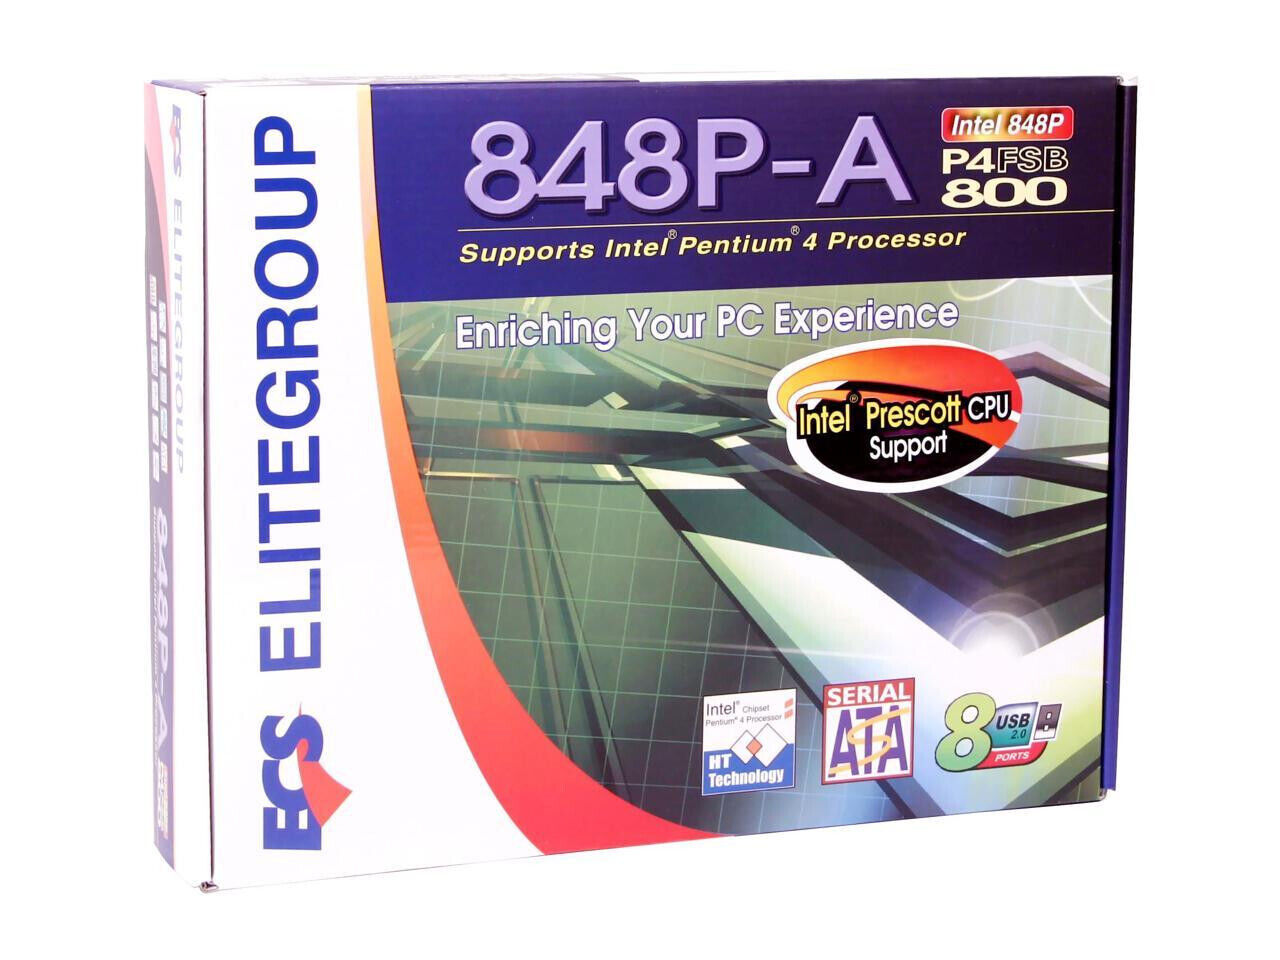 ECS 848P-A  Socket 478 Intel 848P DDR 400 ATX Motherboard